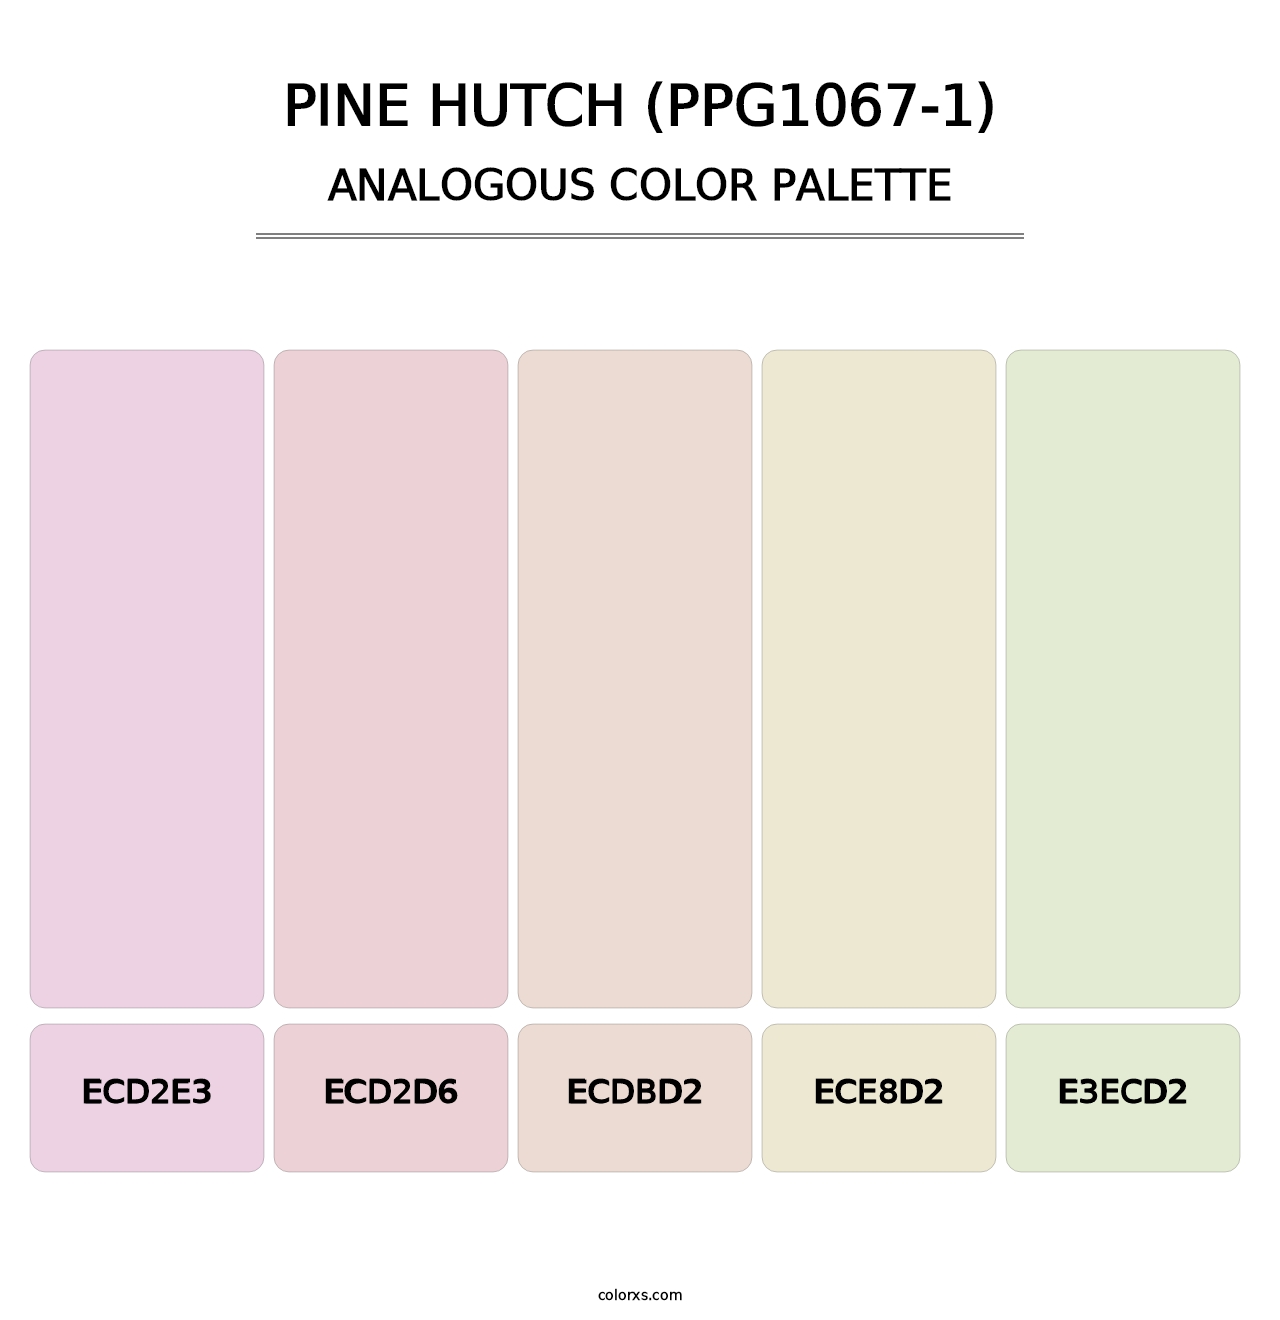 Pine Hutch (PPG1067-1) - Analogous Color Palette